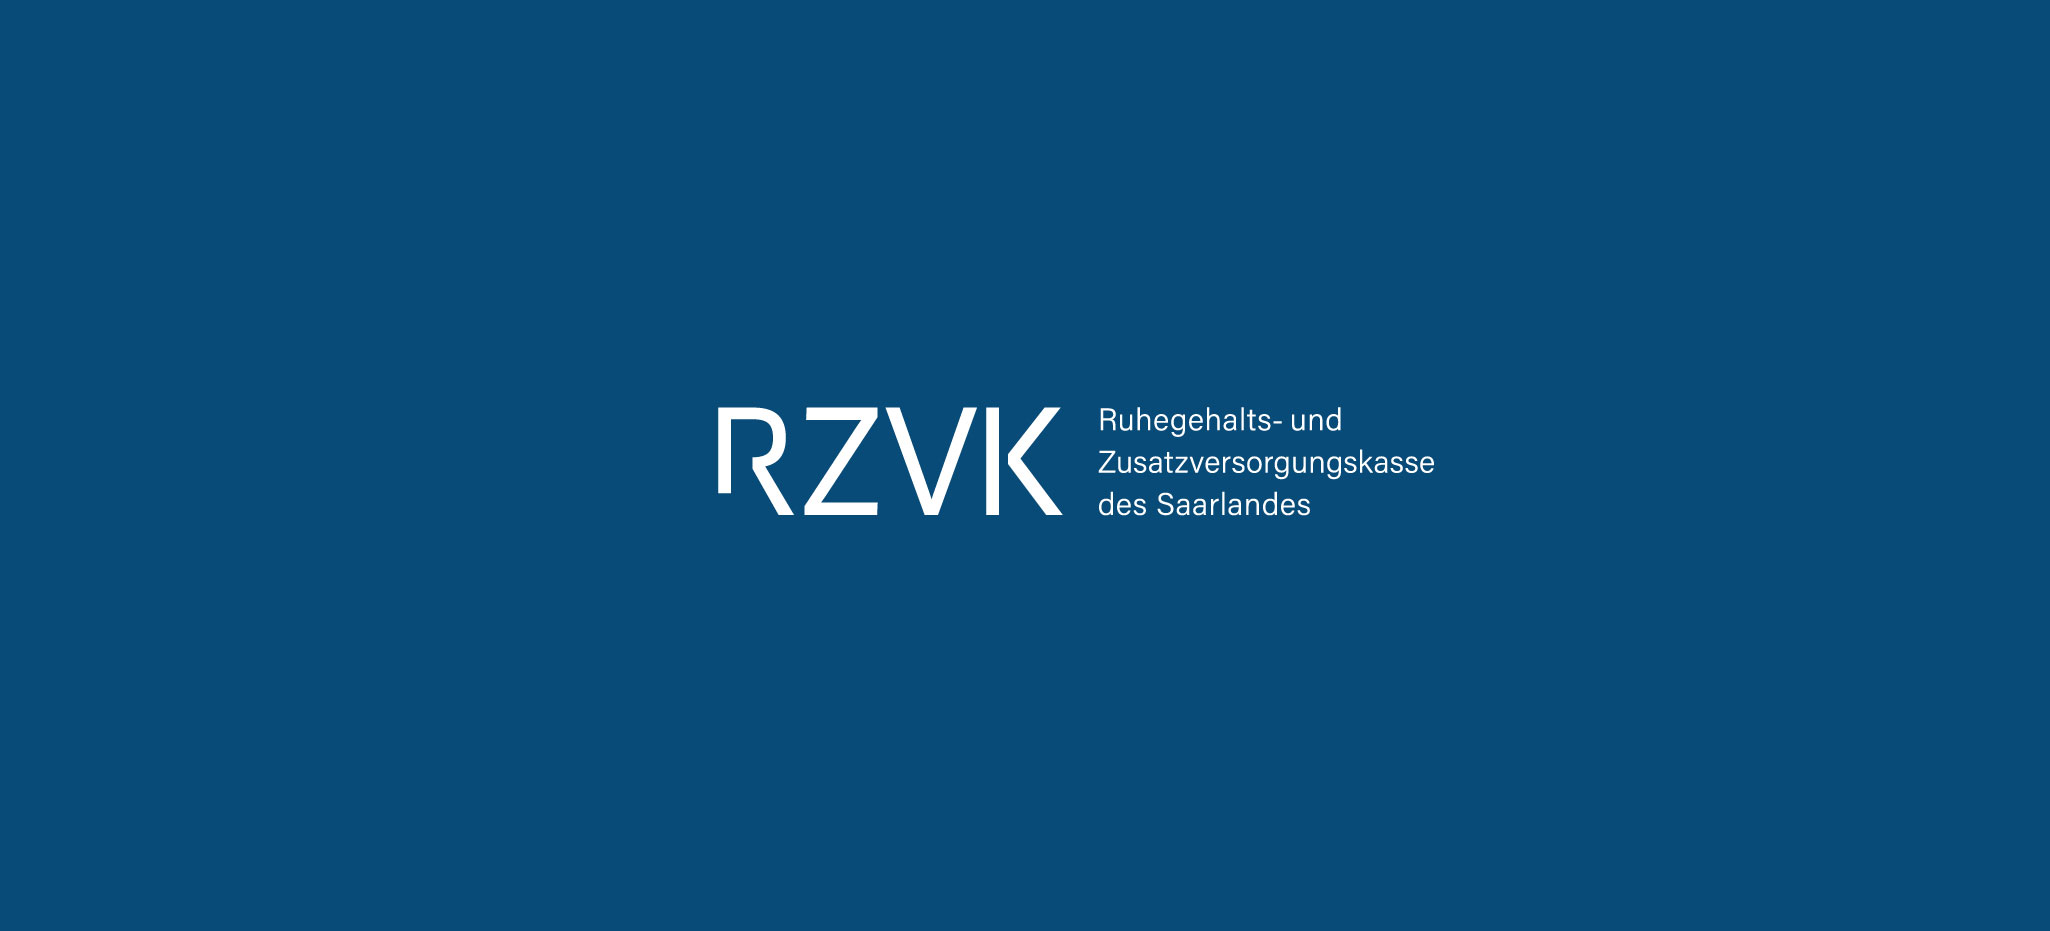 Logogestaltung Werbeagentur Saarland für RZVK